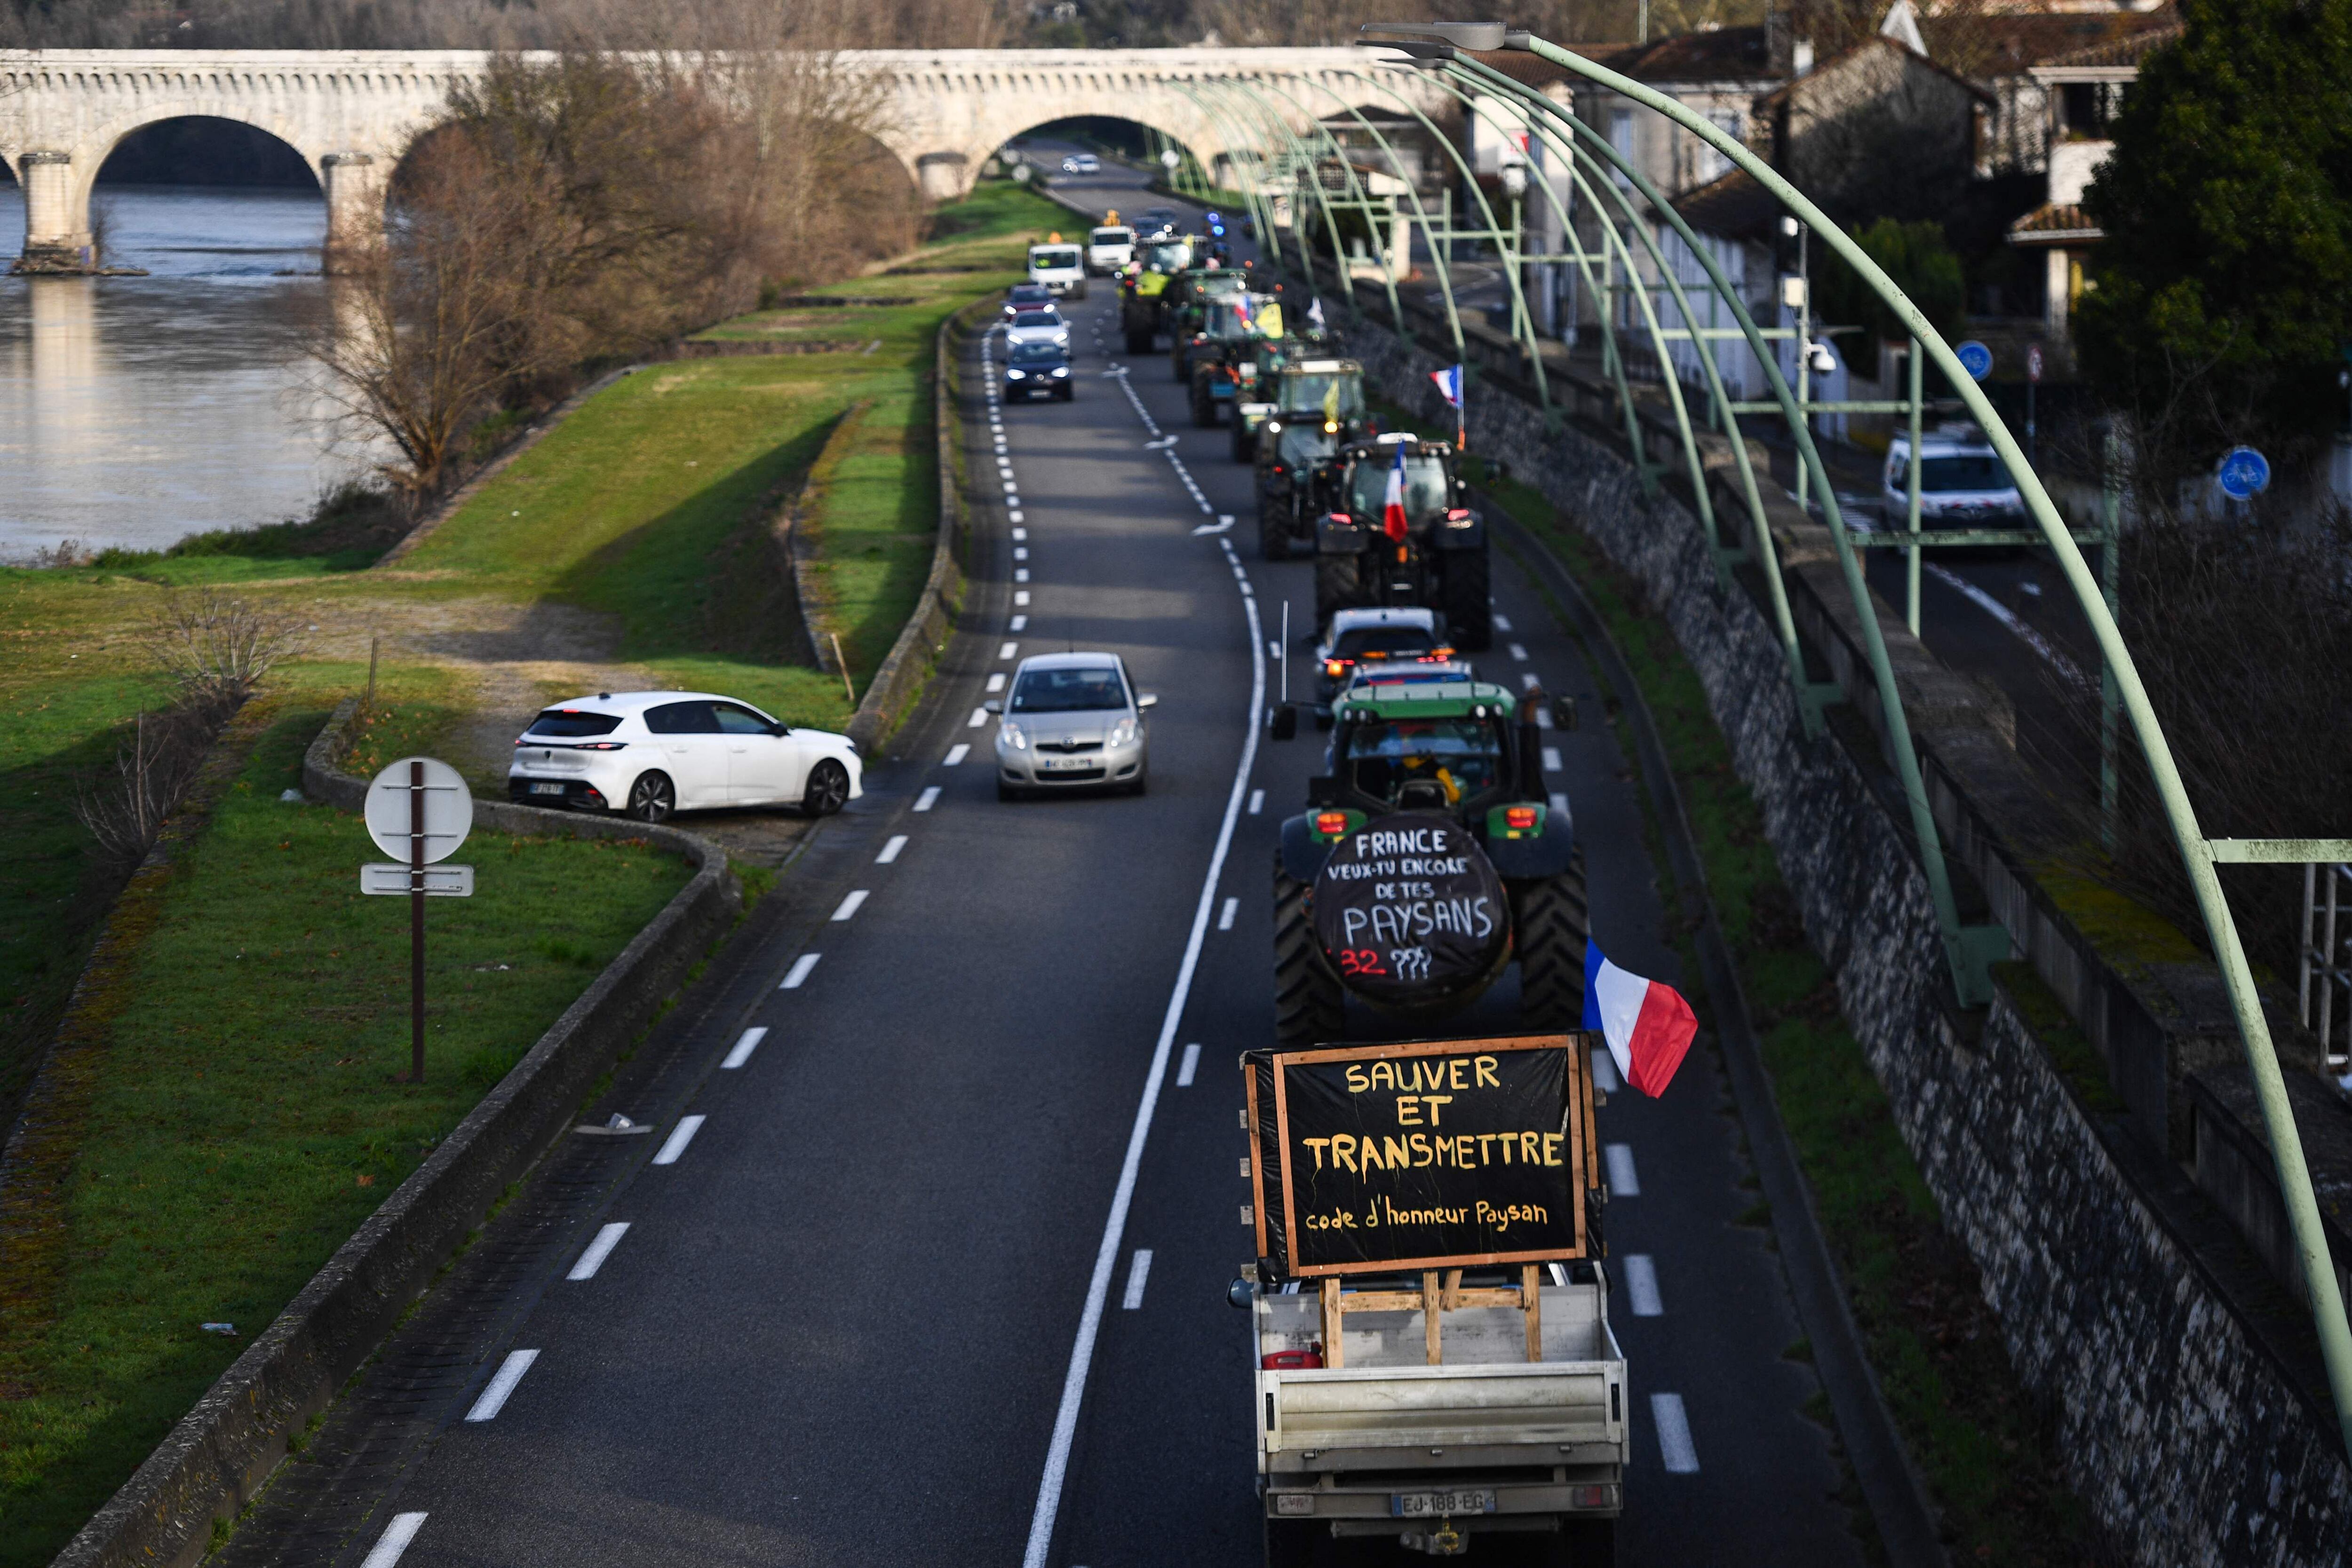 Los agricultores franceses marchan con sus tractores por la carretera. Uno de ellos (abajo) porta un cartel que dice 